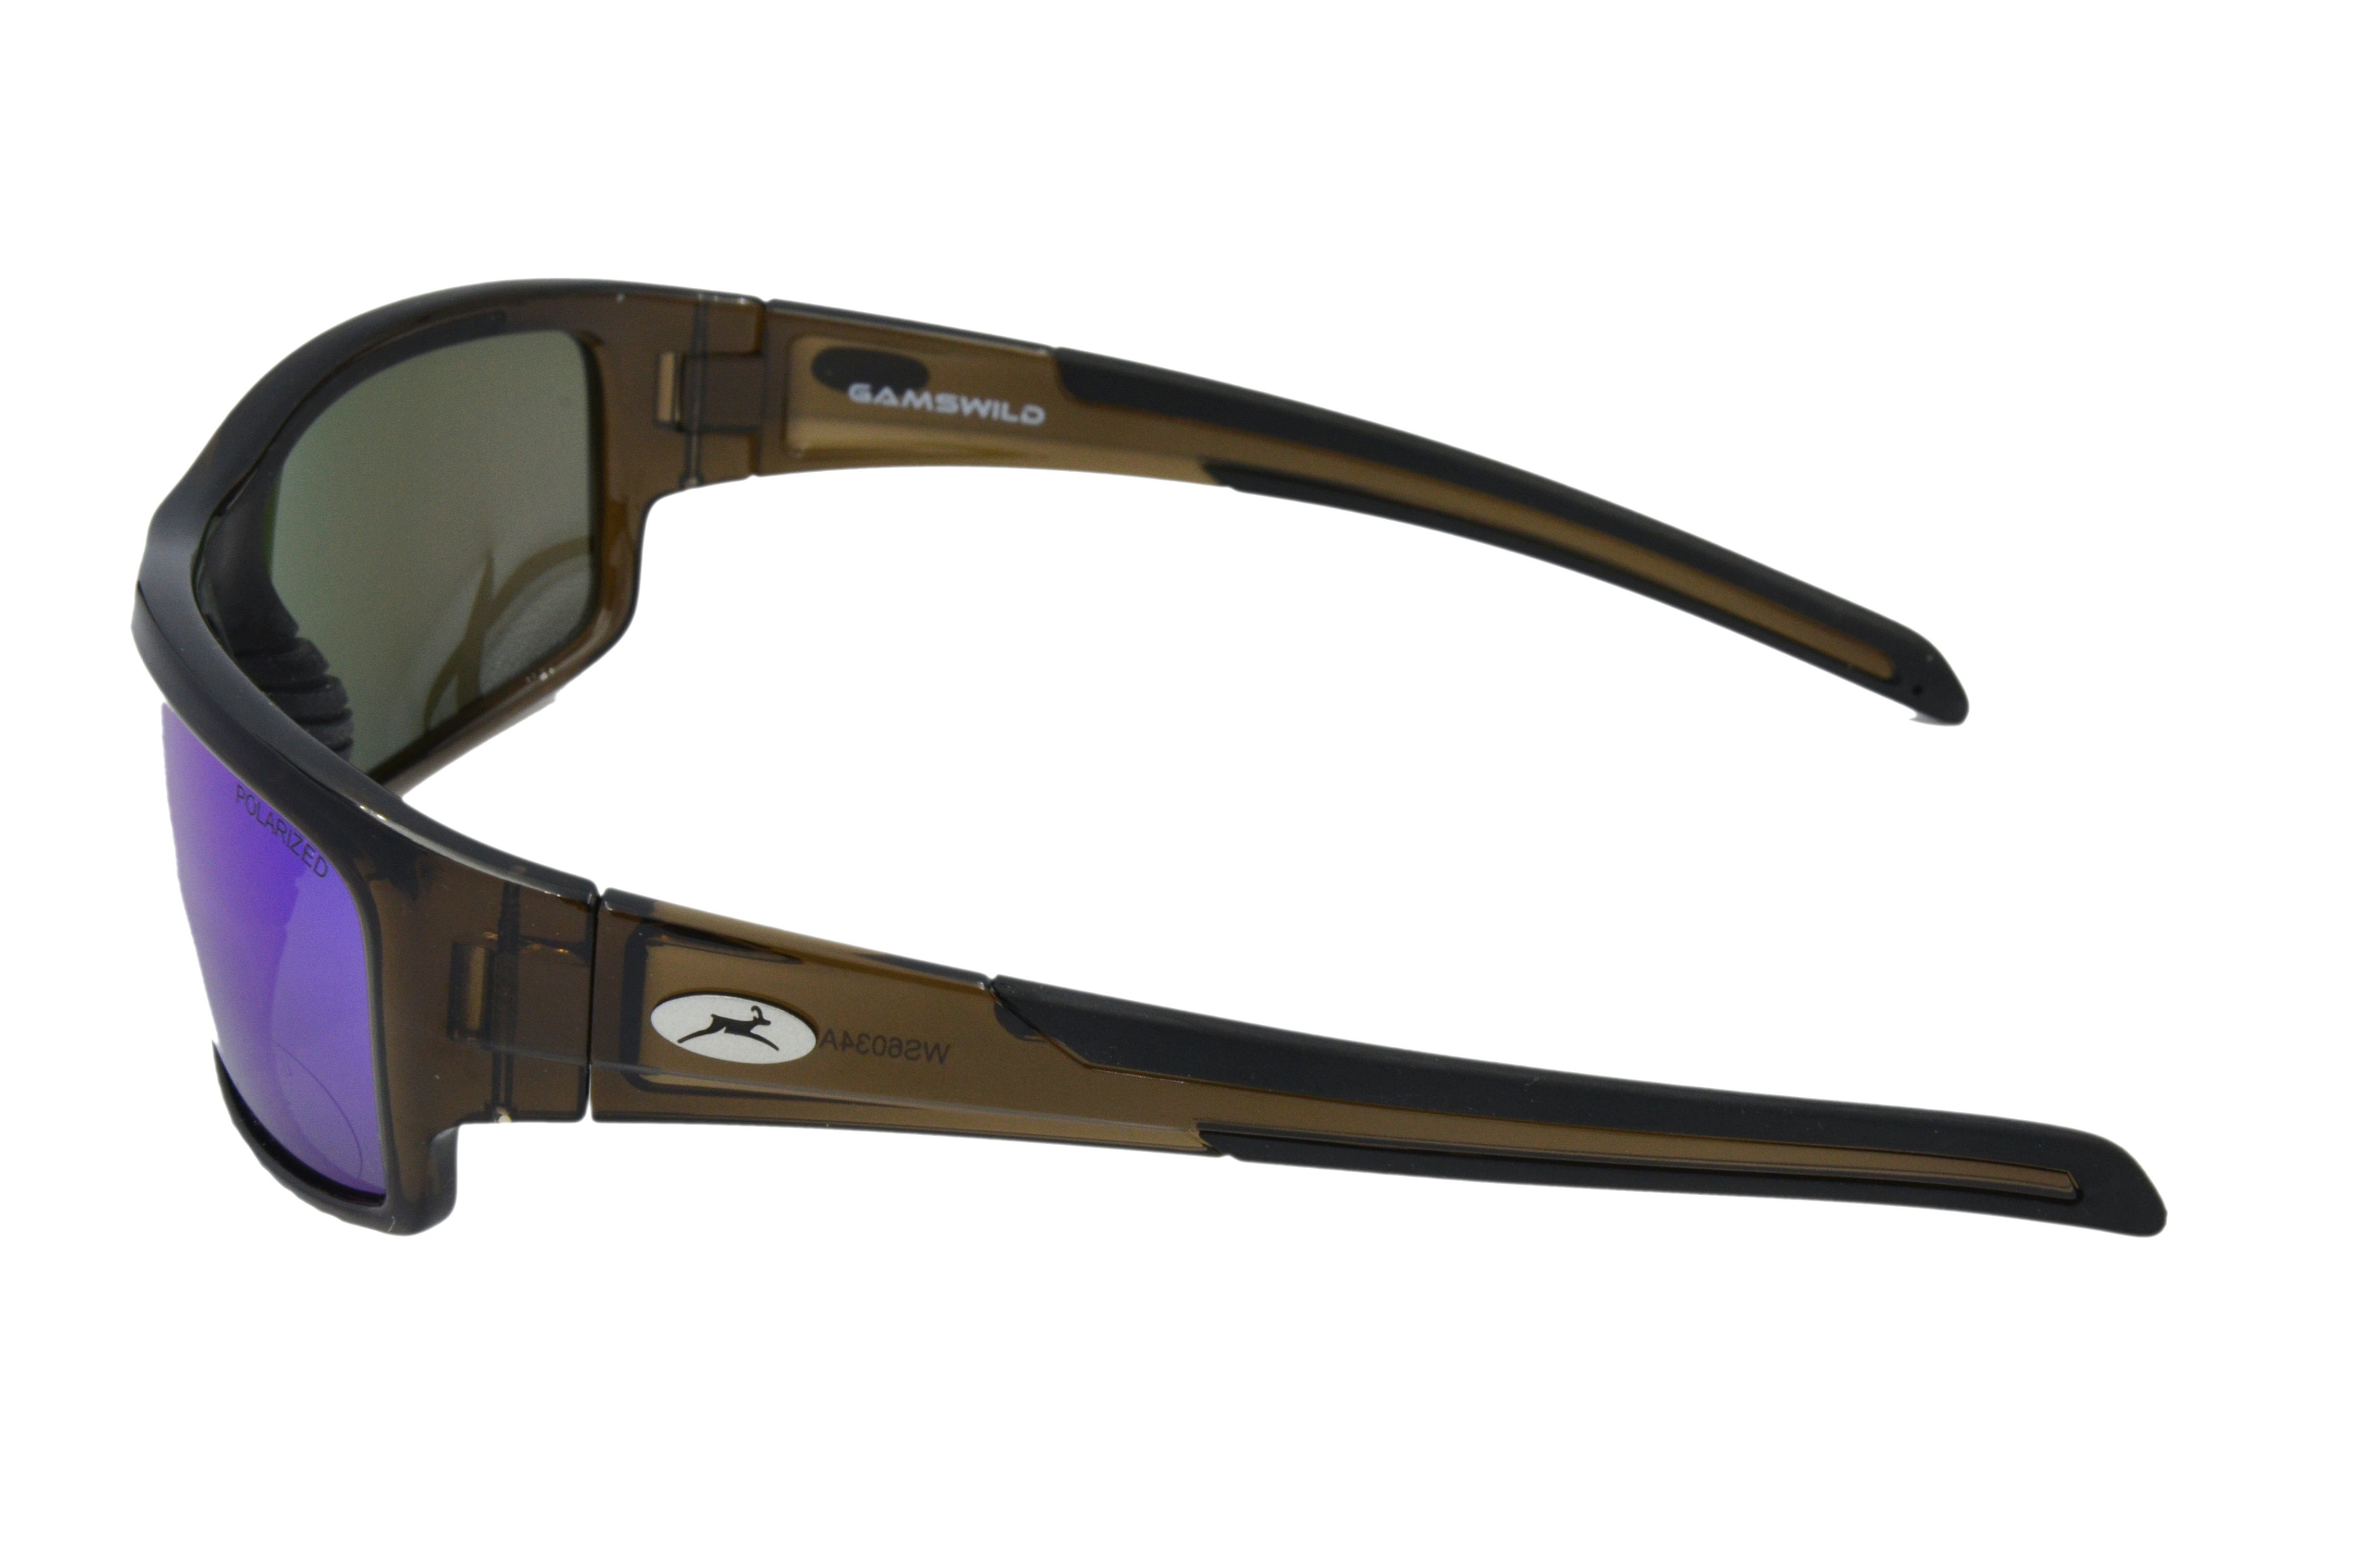 grün-türkis, Sportbrille Herren, blau, grau, Gläser, schwarz, Damen braun polarisierte WS6034 Sonnenbrille Fahrradbrille Sportbrille Gamswild Skibrille